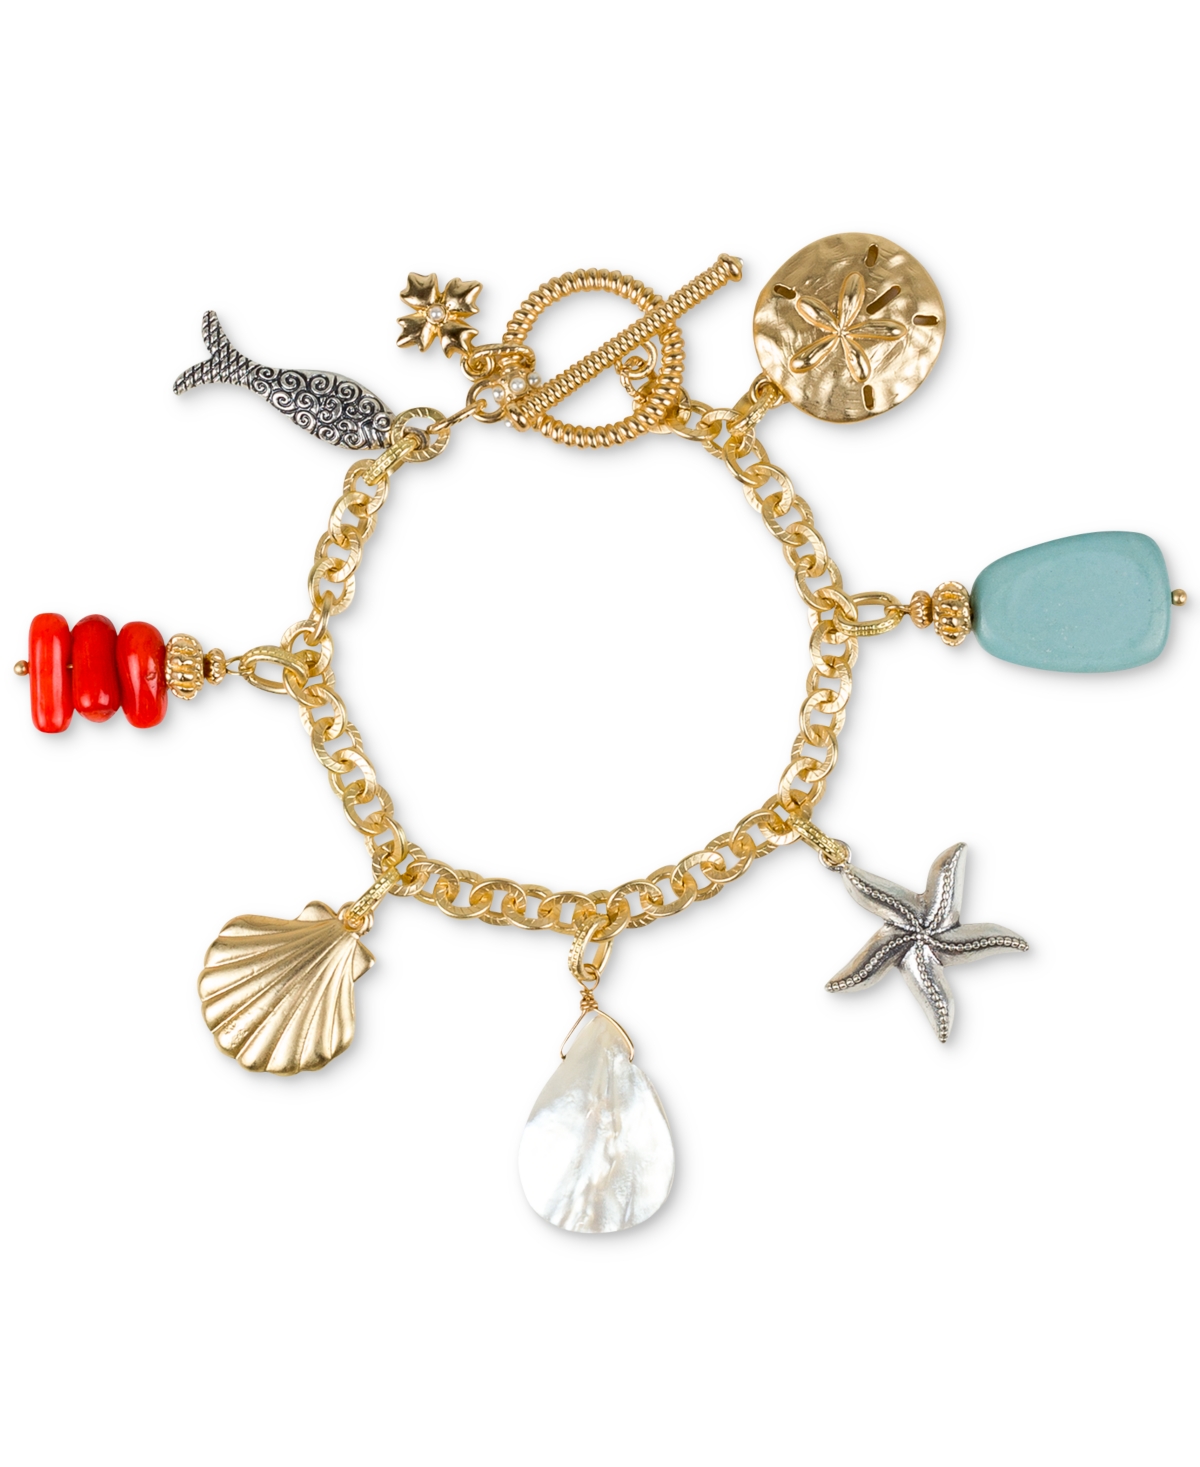 Gold-Tone Seashore Charm Toggle Bracelet - Egyp Gold/